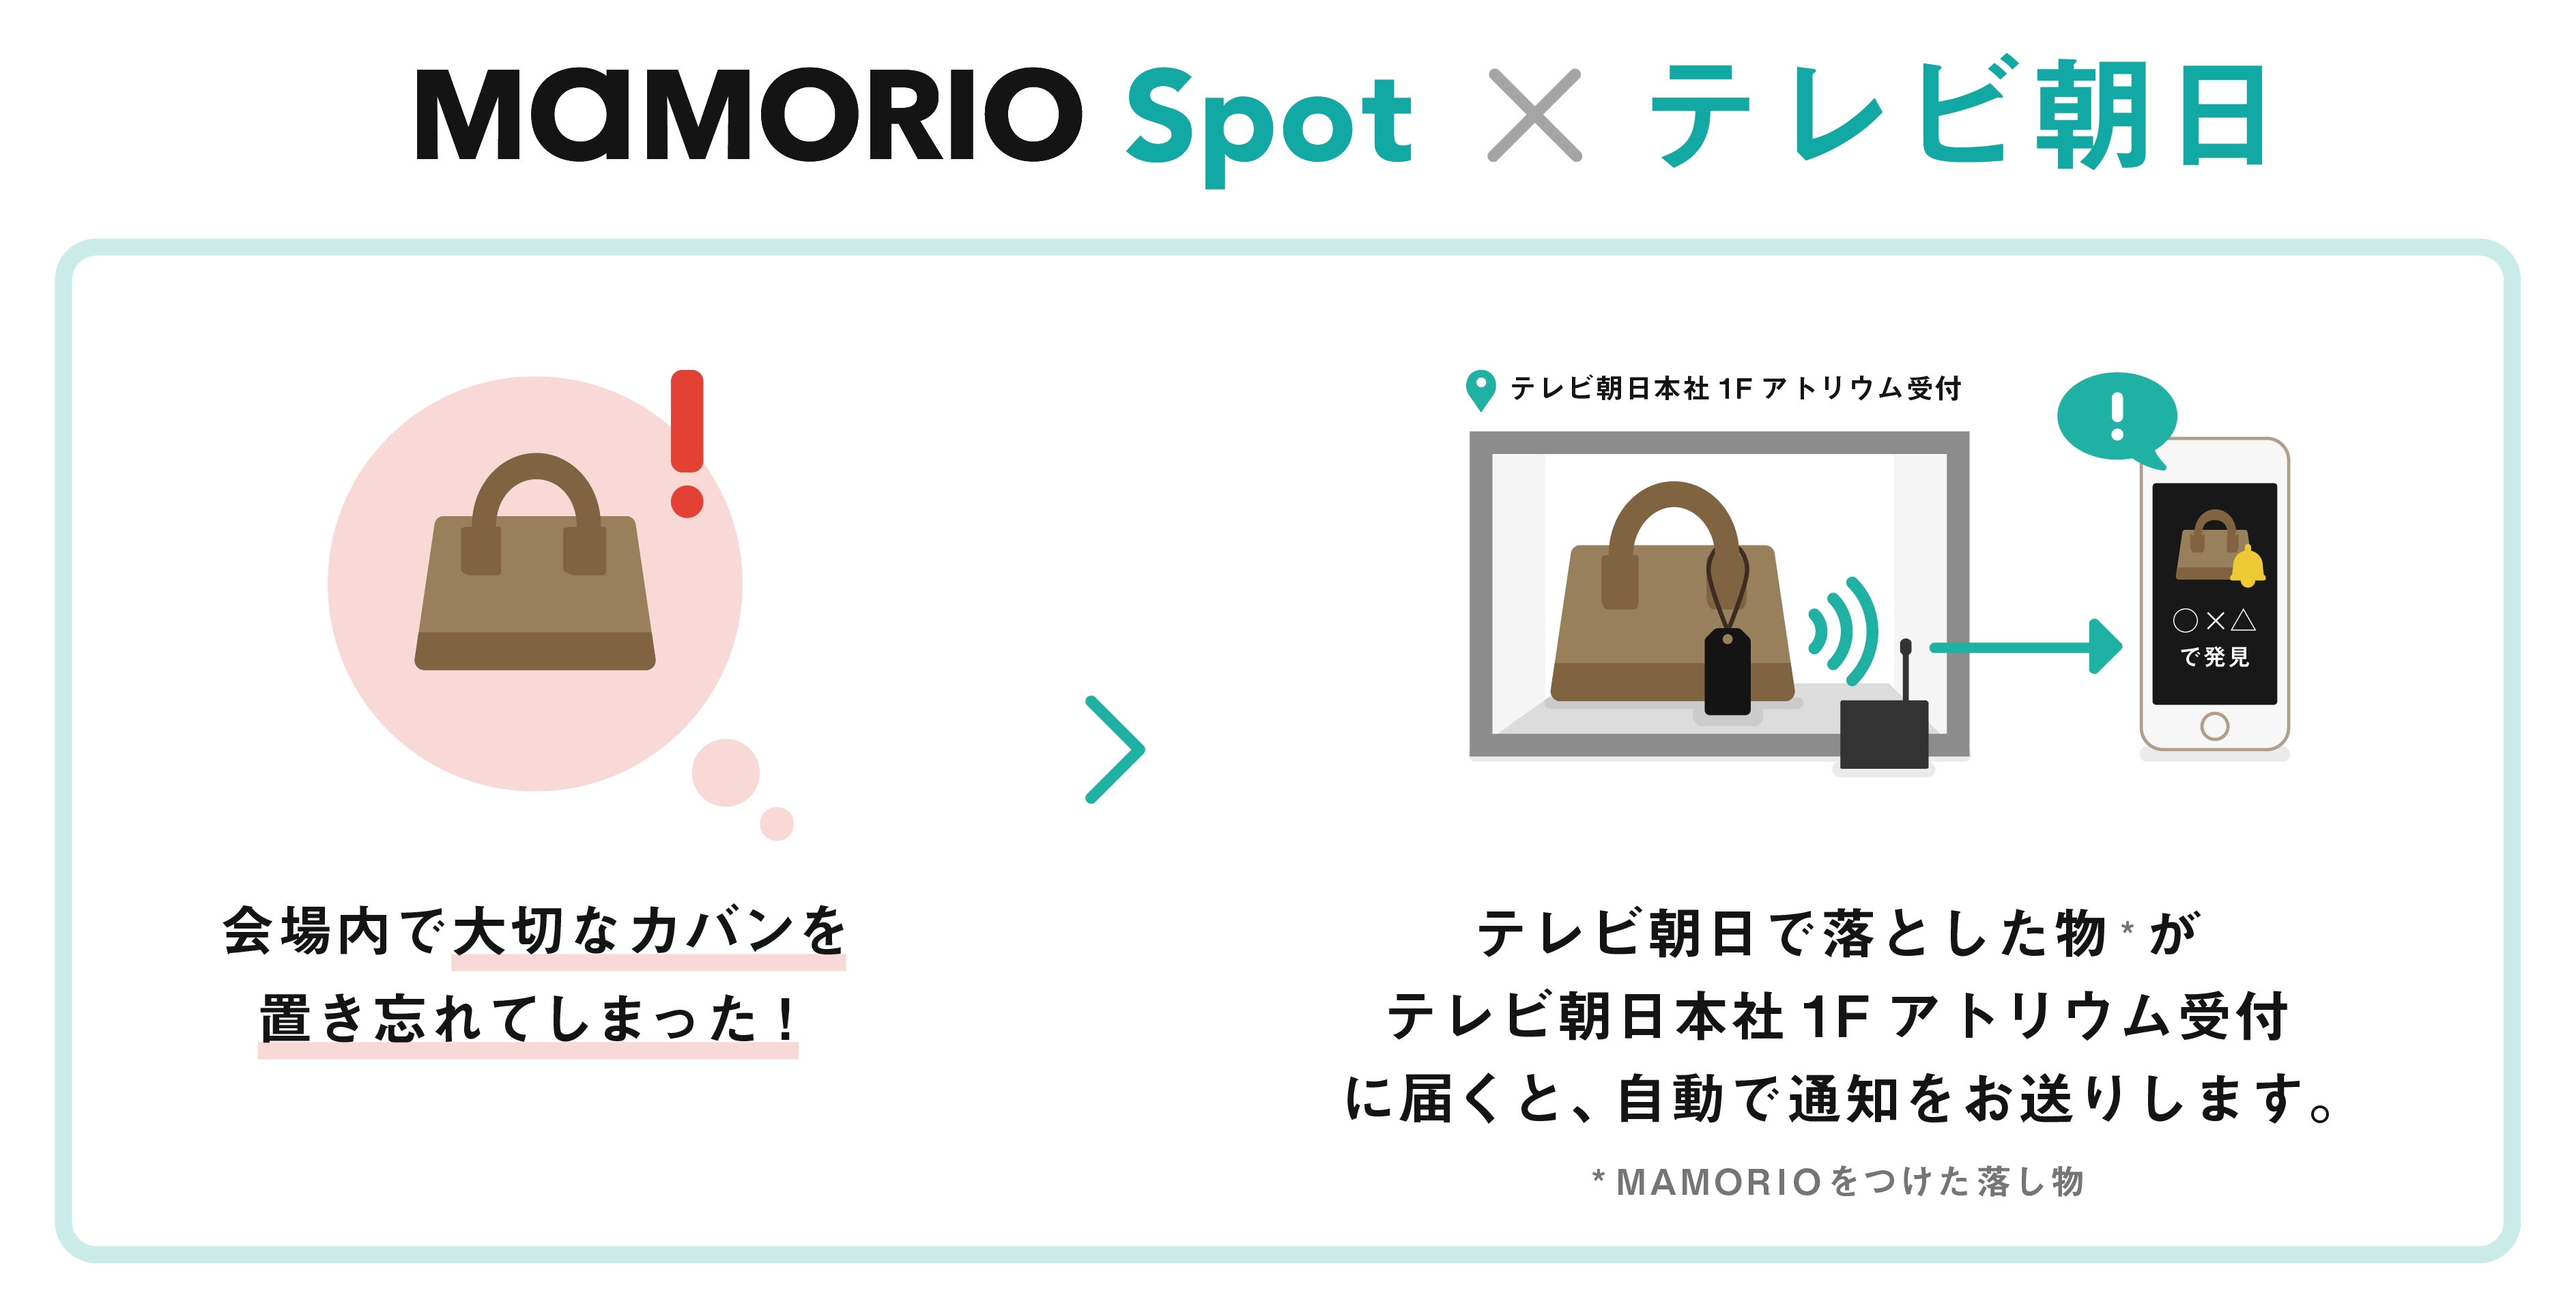 Mamorio テレビ朝日と連携しテレビ朝日本社でiotを活用した お忘れ物自動通知サービス を提供 Mamorio株式会社のプレスリリース